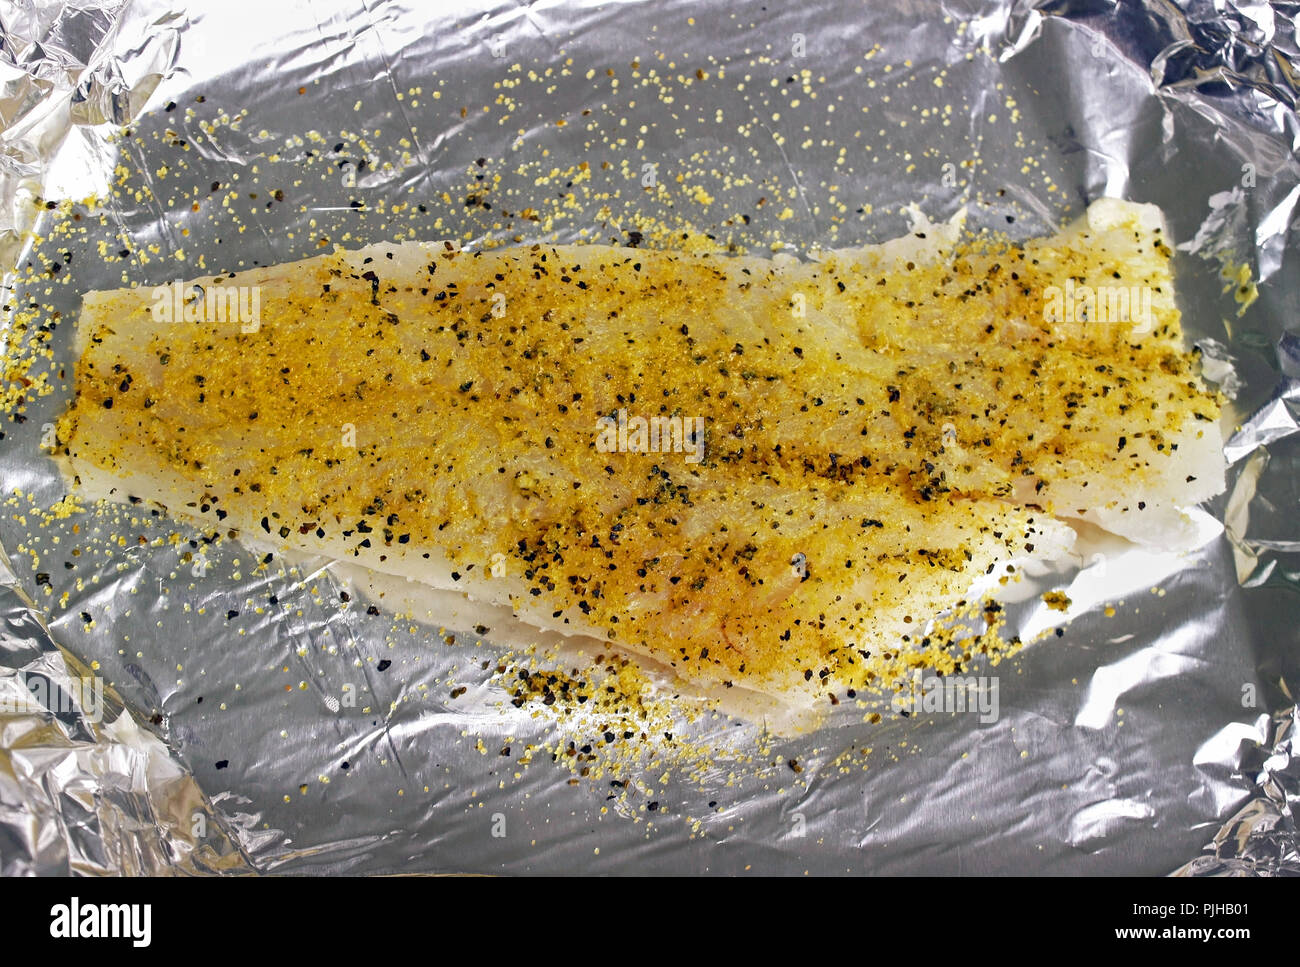 Filet de sole frais avec du citron poivre sur l'aluminium pour la cuisson Banque D'Images